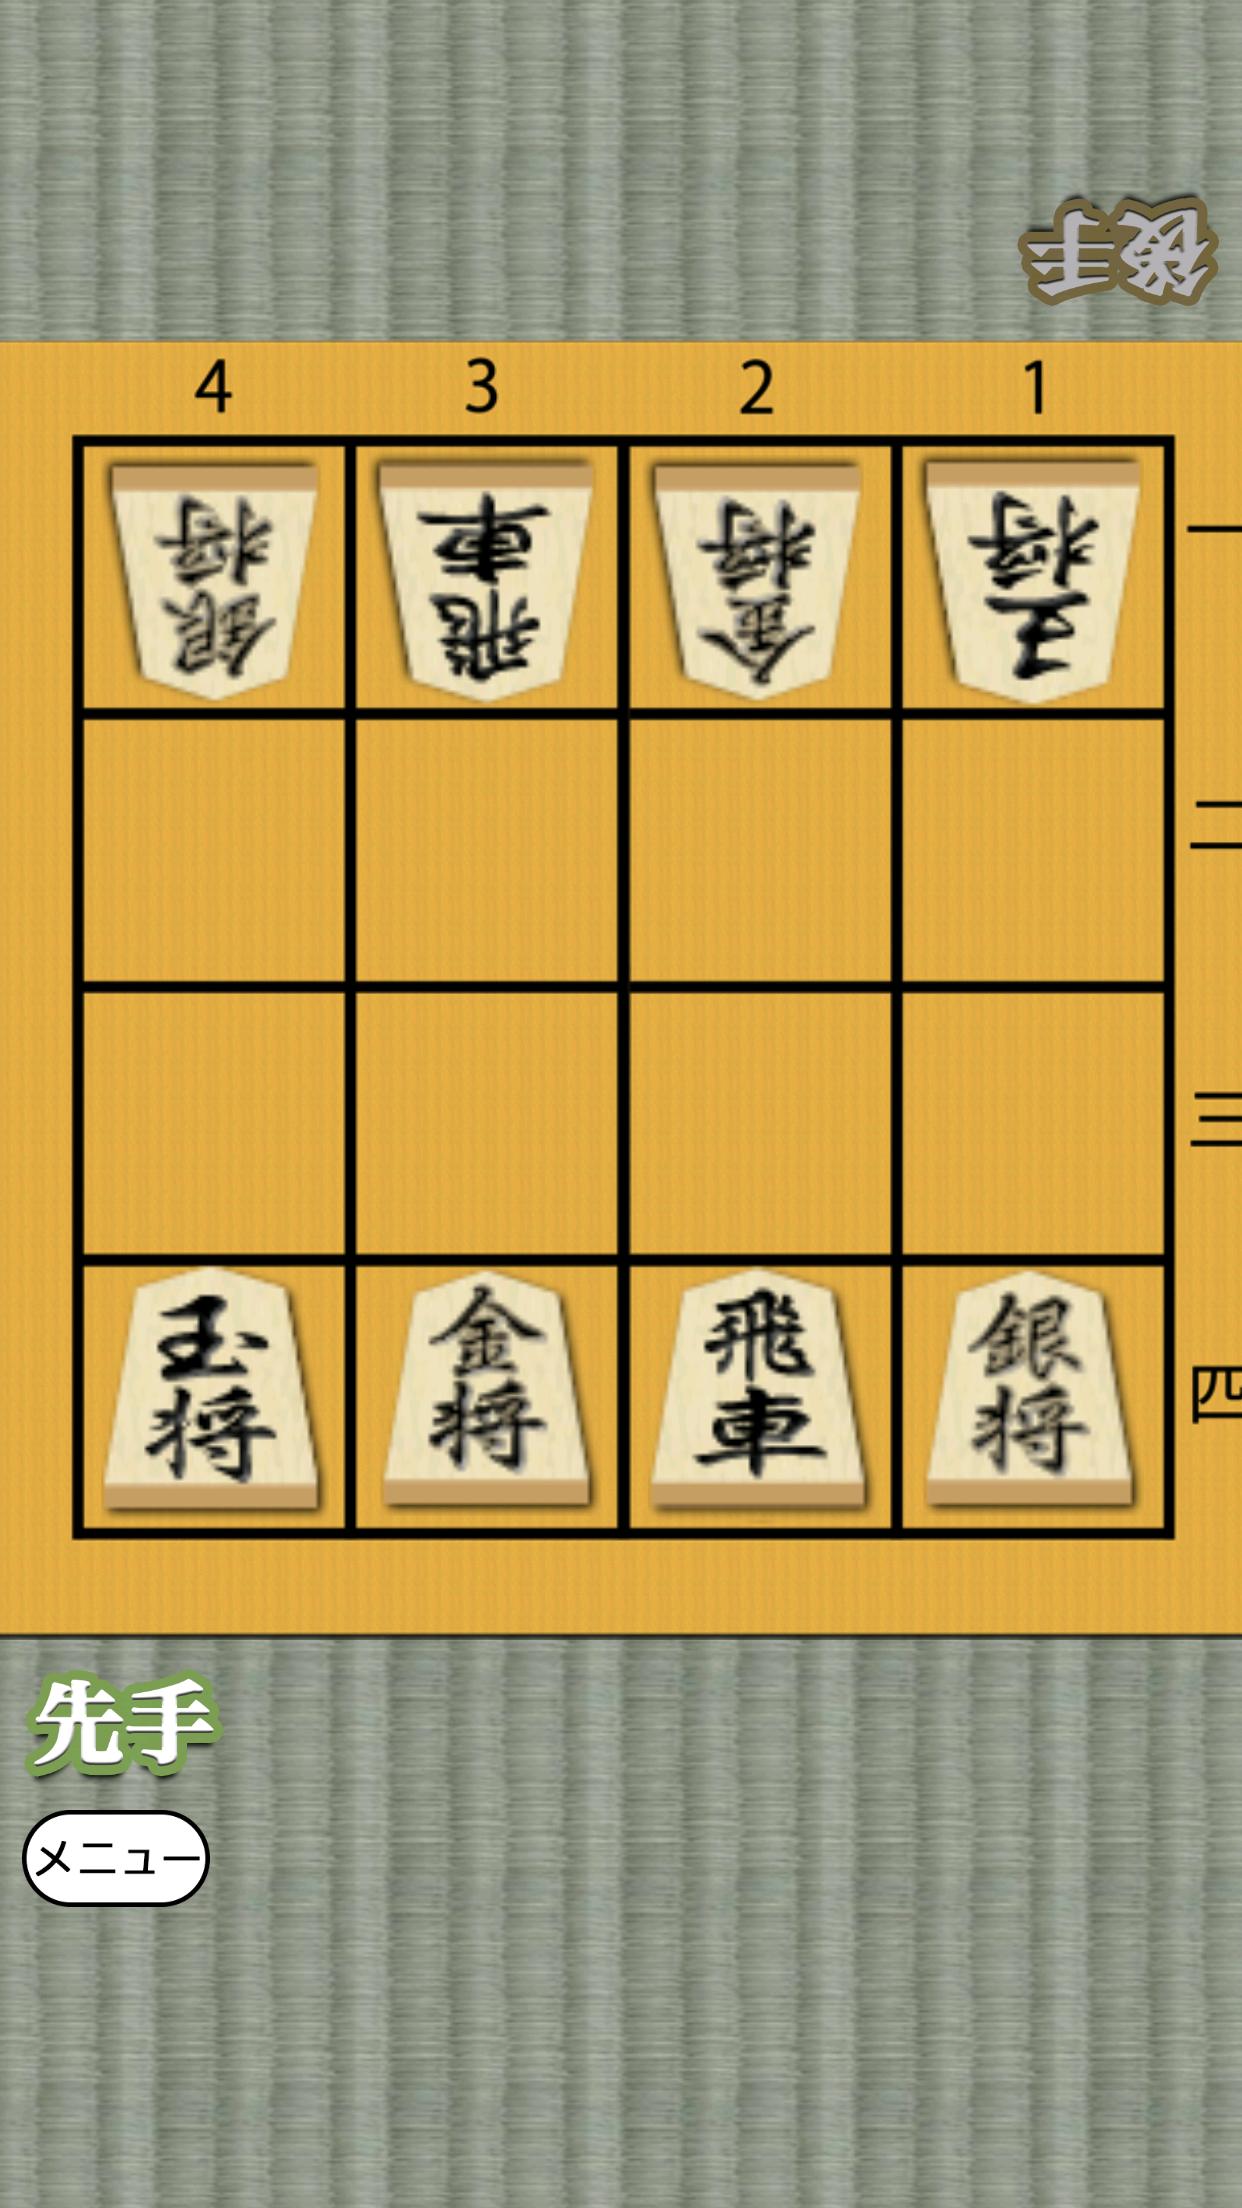 Shogi for beginners 1.0.4 Screenshot 1